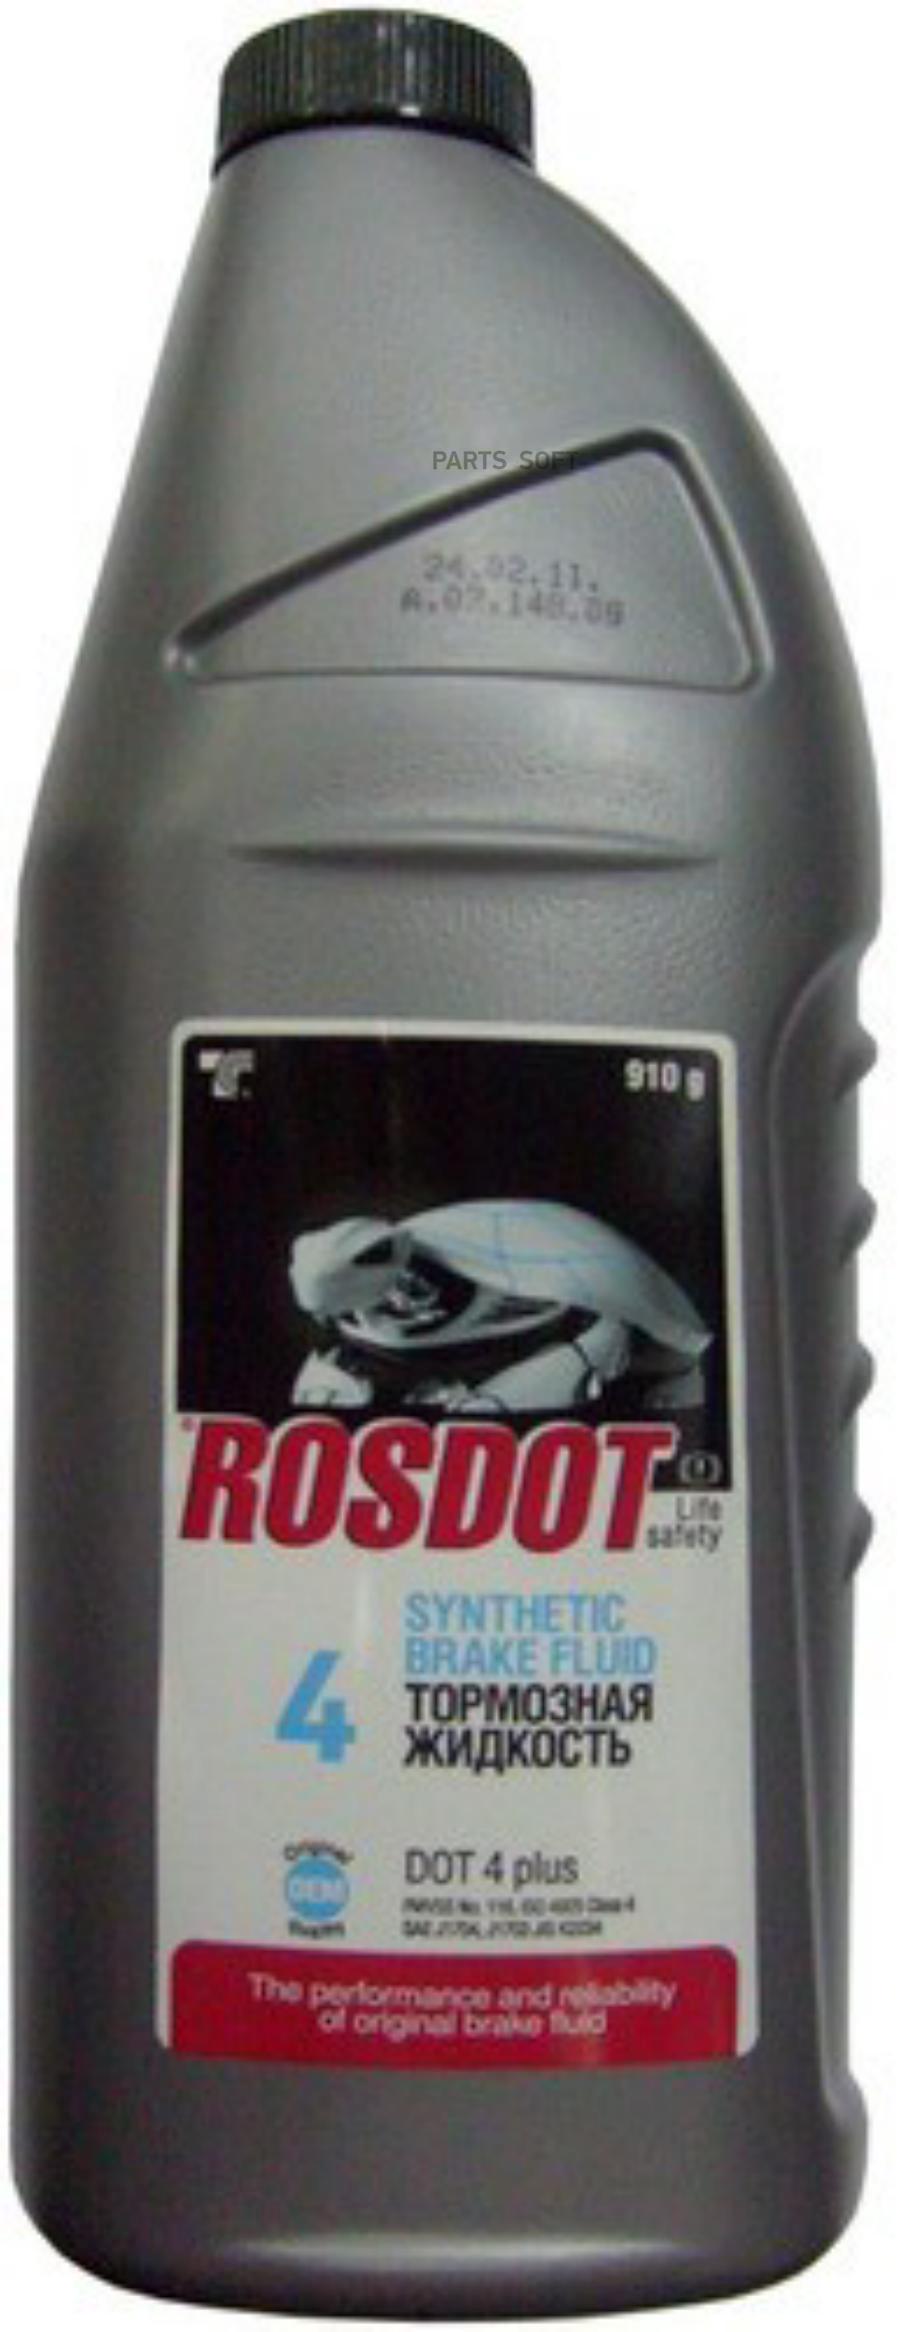 Жидкость тормозная ROSDOT DOT4 910 г 430101H03